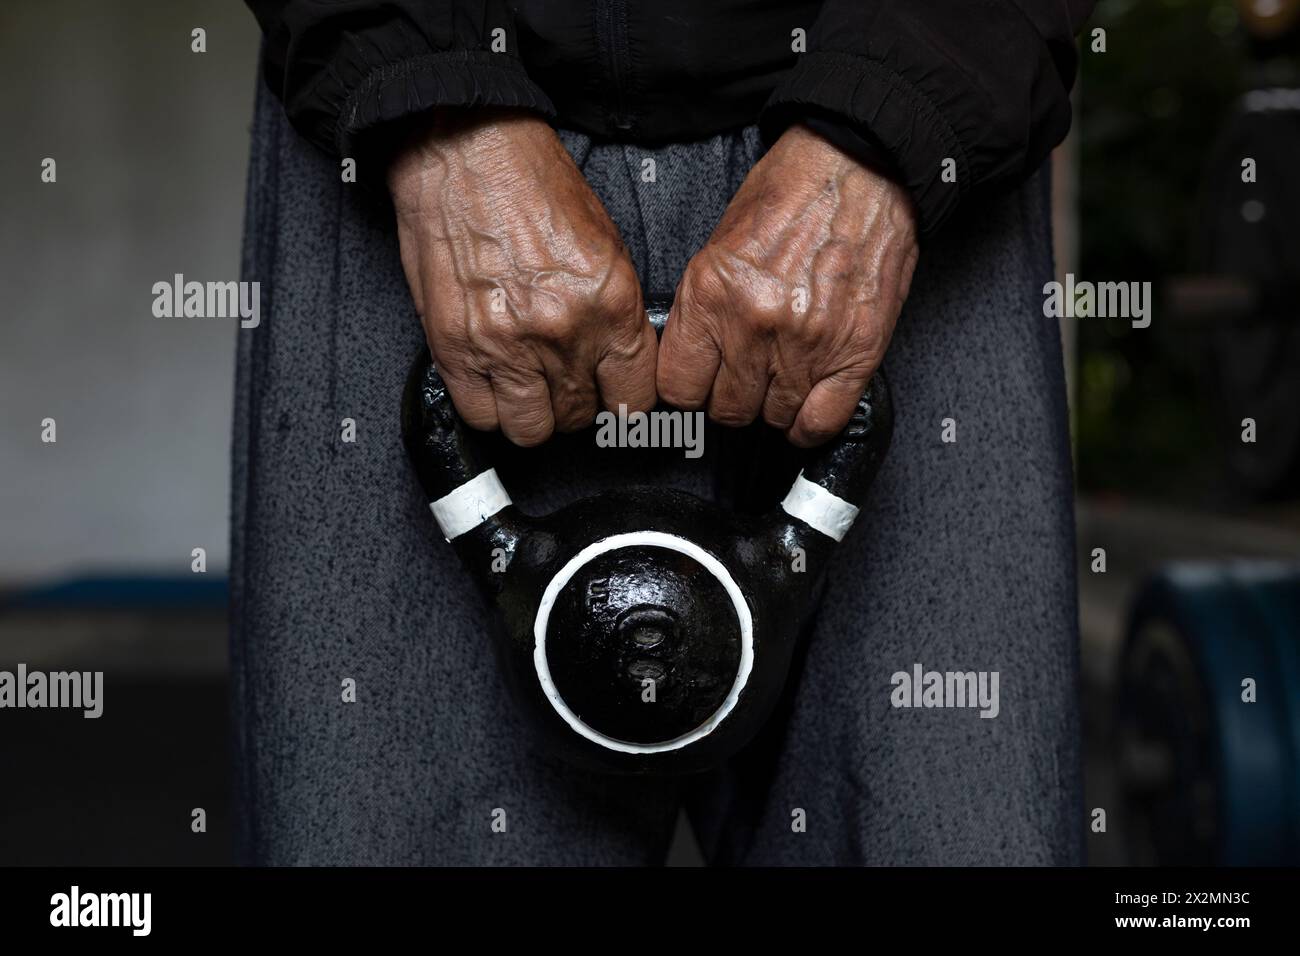 Homme senior latino-américain méconnaissable tenant une kettlebell avec les deux mains pendant ses séances de rééducation et de thérapie au gymnase. Vie saine Banque D'Images